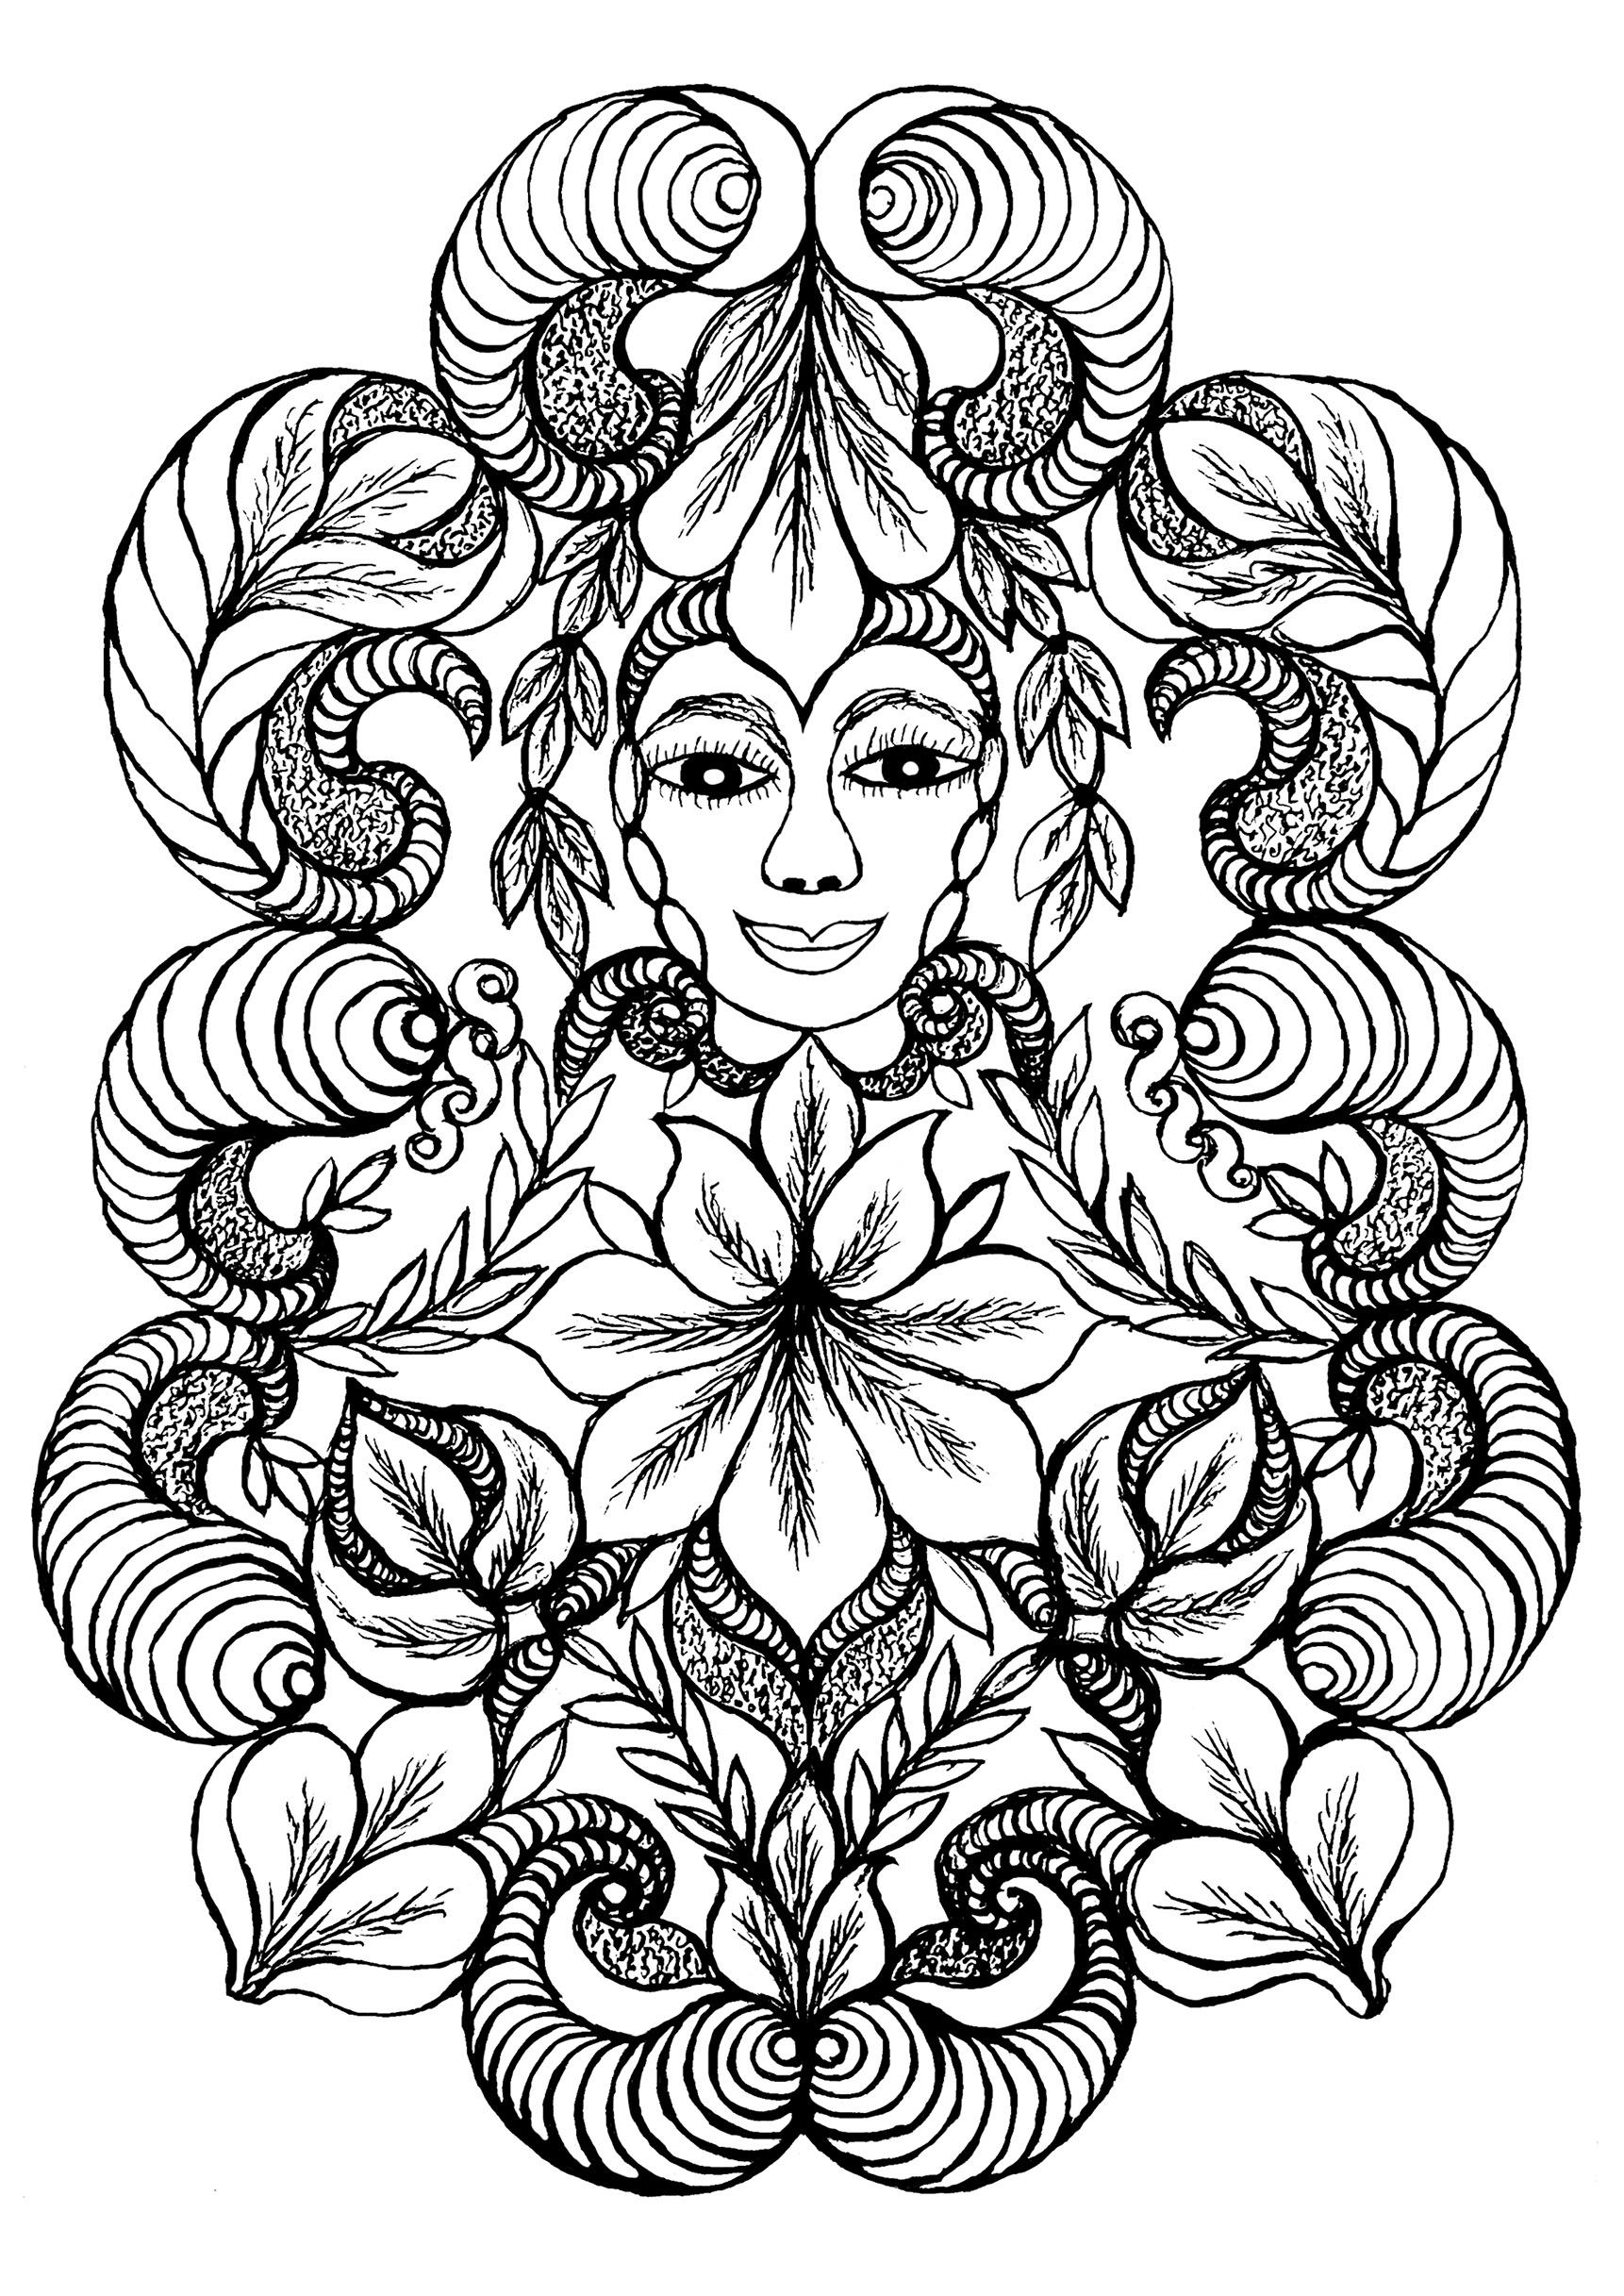 Mujer flor, una página para colorear inspirada en las pinturas de Minnie Evans.  Las pinturas y dibujos coloreados de Minnie Evans (1892, 1987) son surrealistas sin intelectualismo ni autoconciencia.